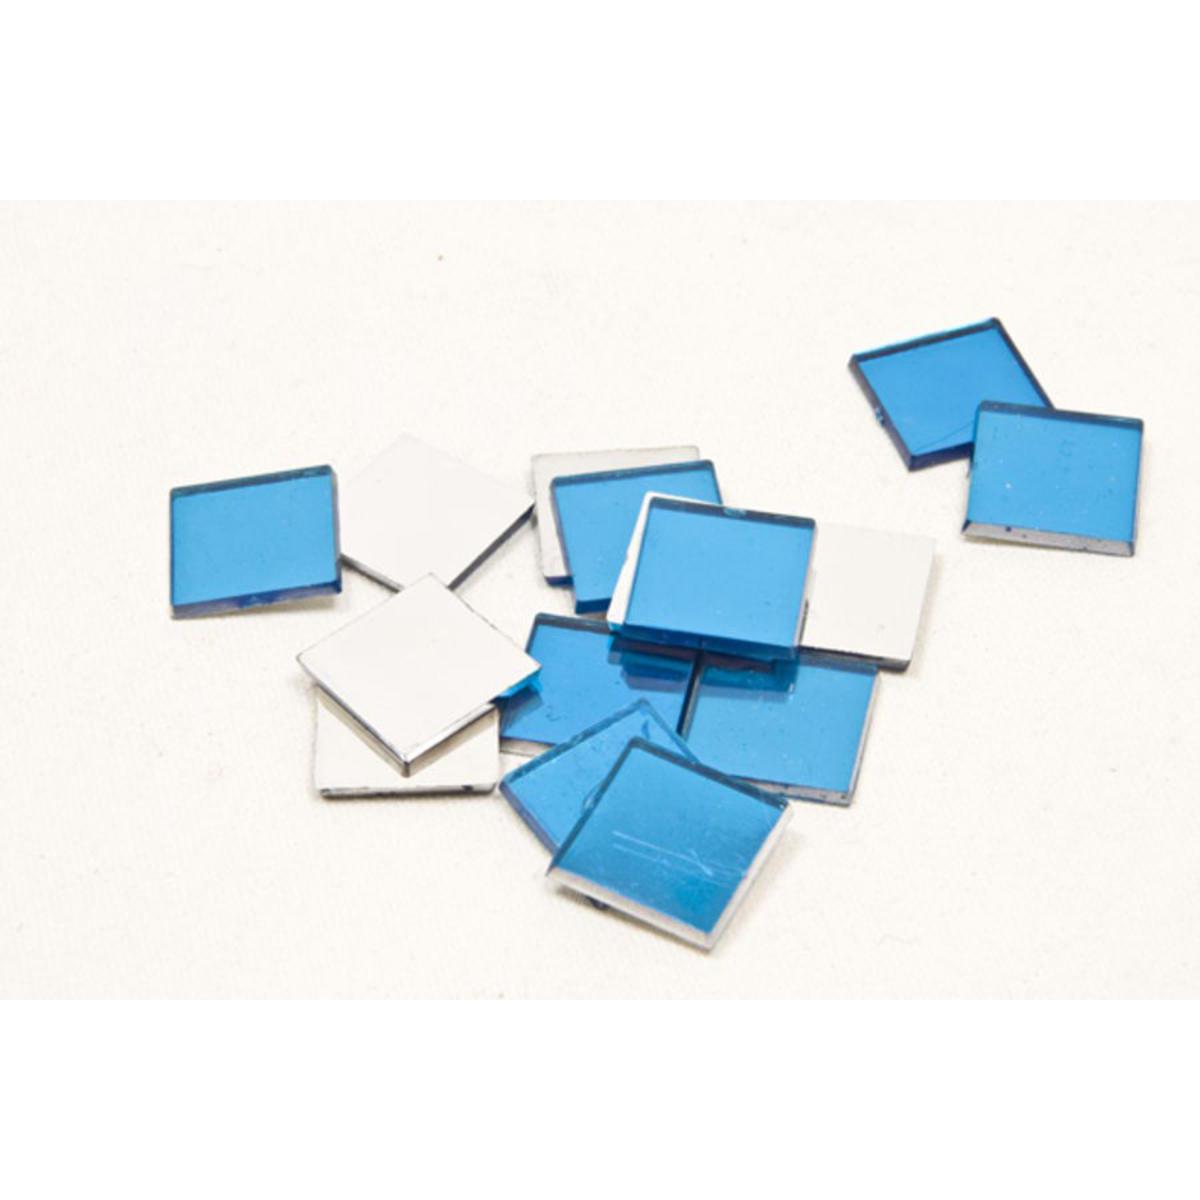 Lot de 20 carrés miroir décoratifs - 1,5 x 1,5 cm - Bleu turquoise